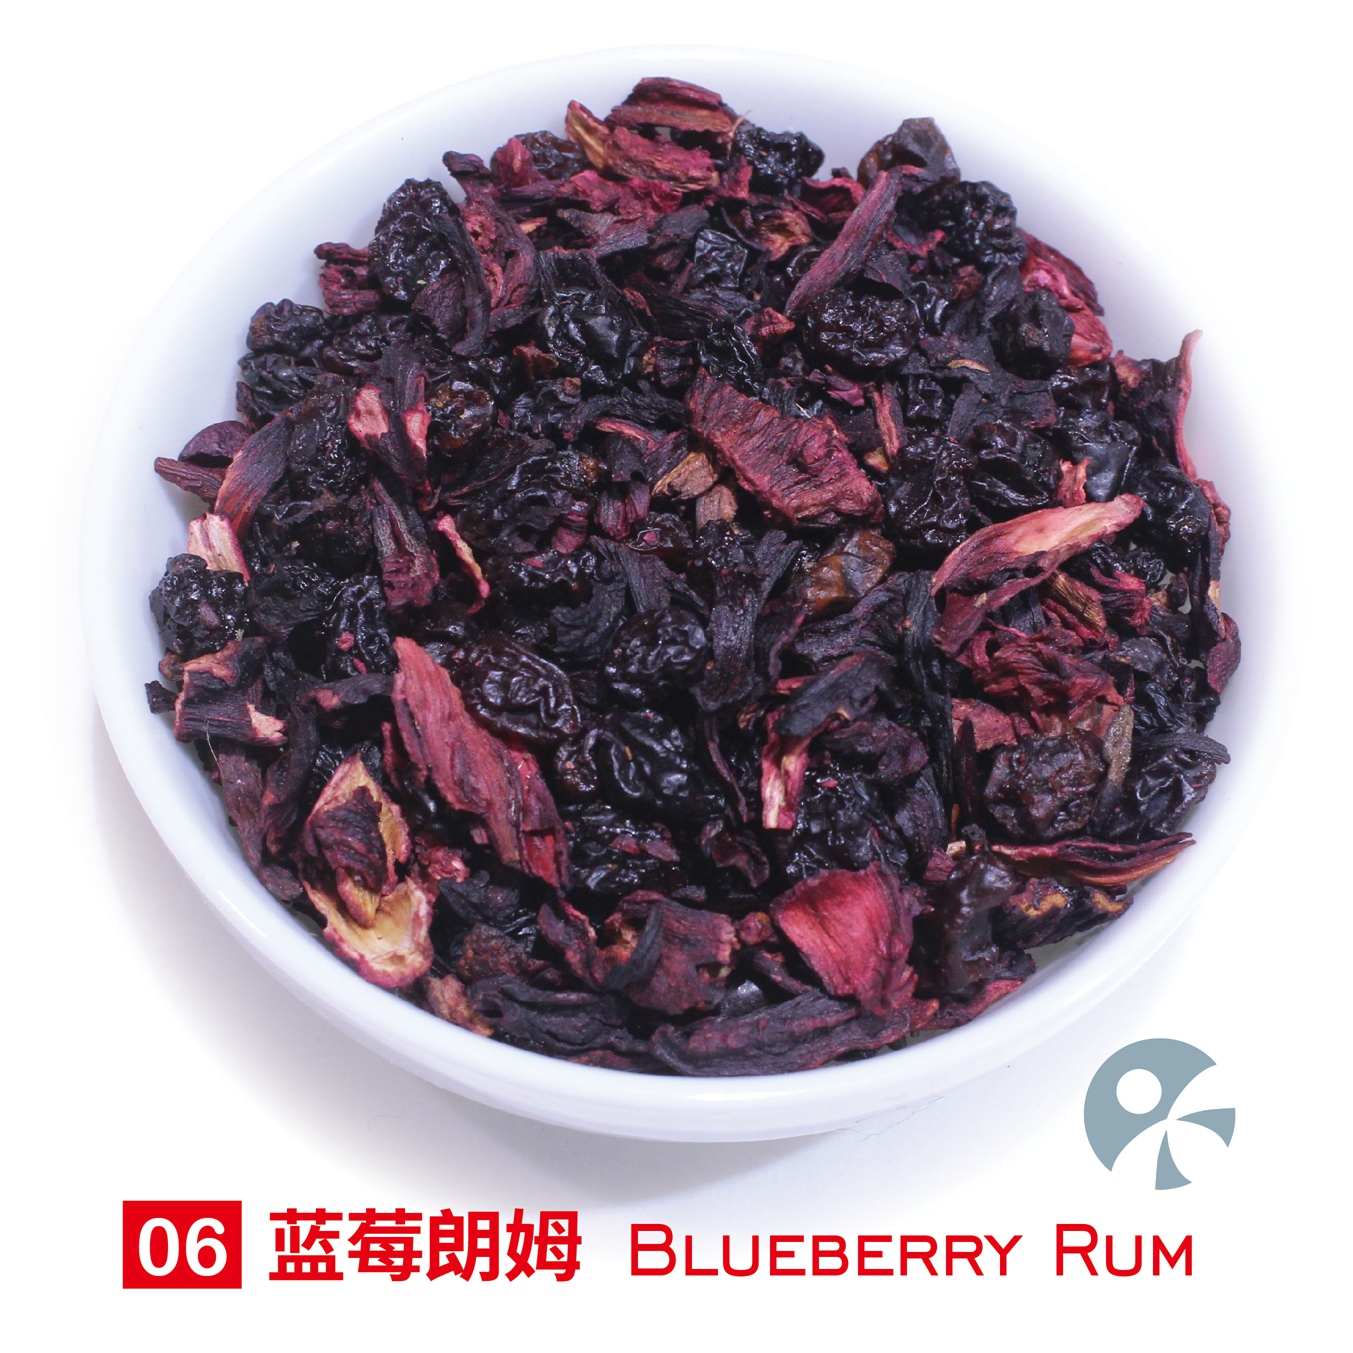 「蓝蜜蜂·果茶」蓝莓朗姆 Blueberry Rum